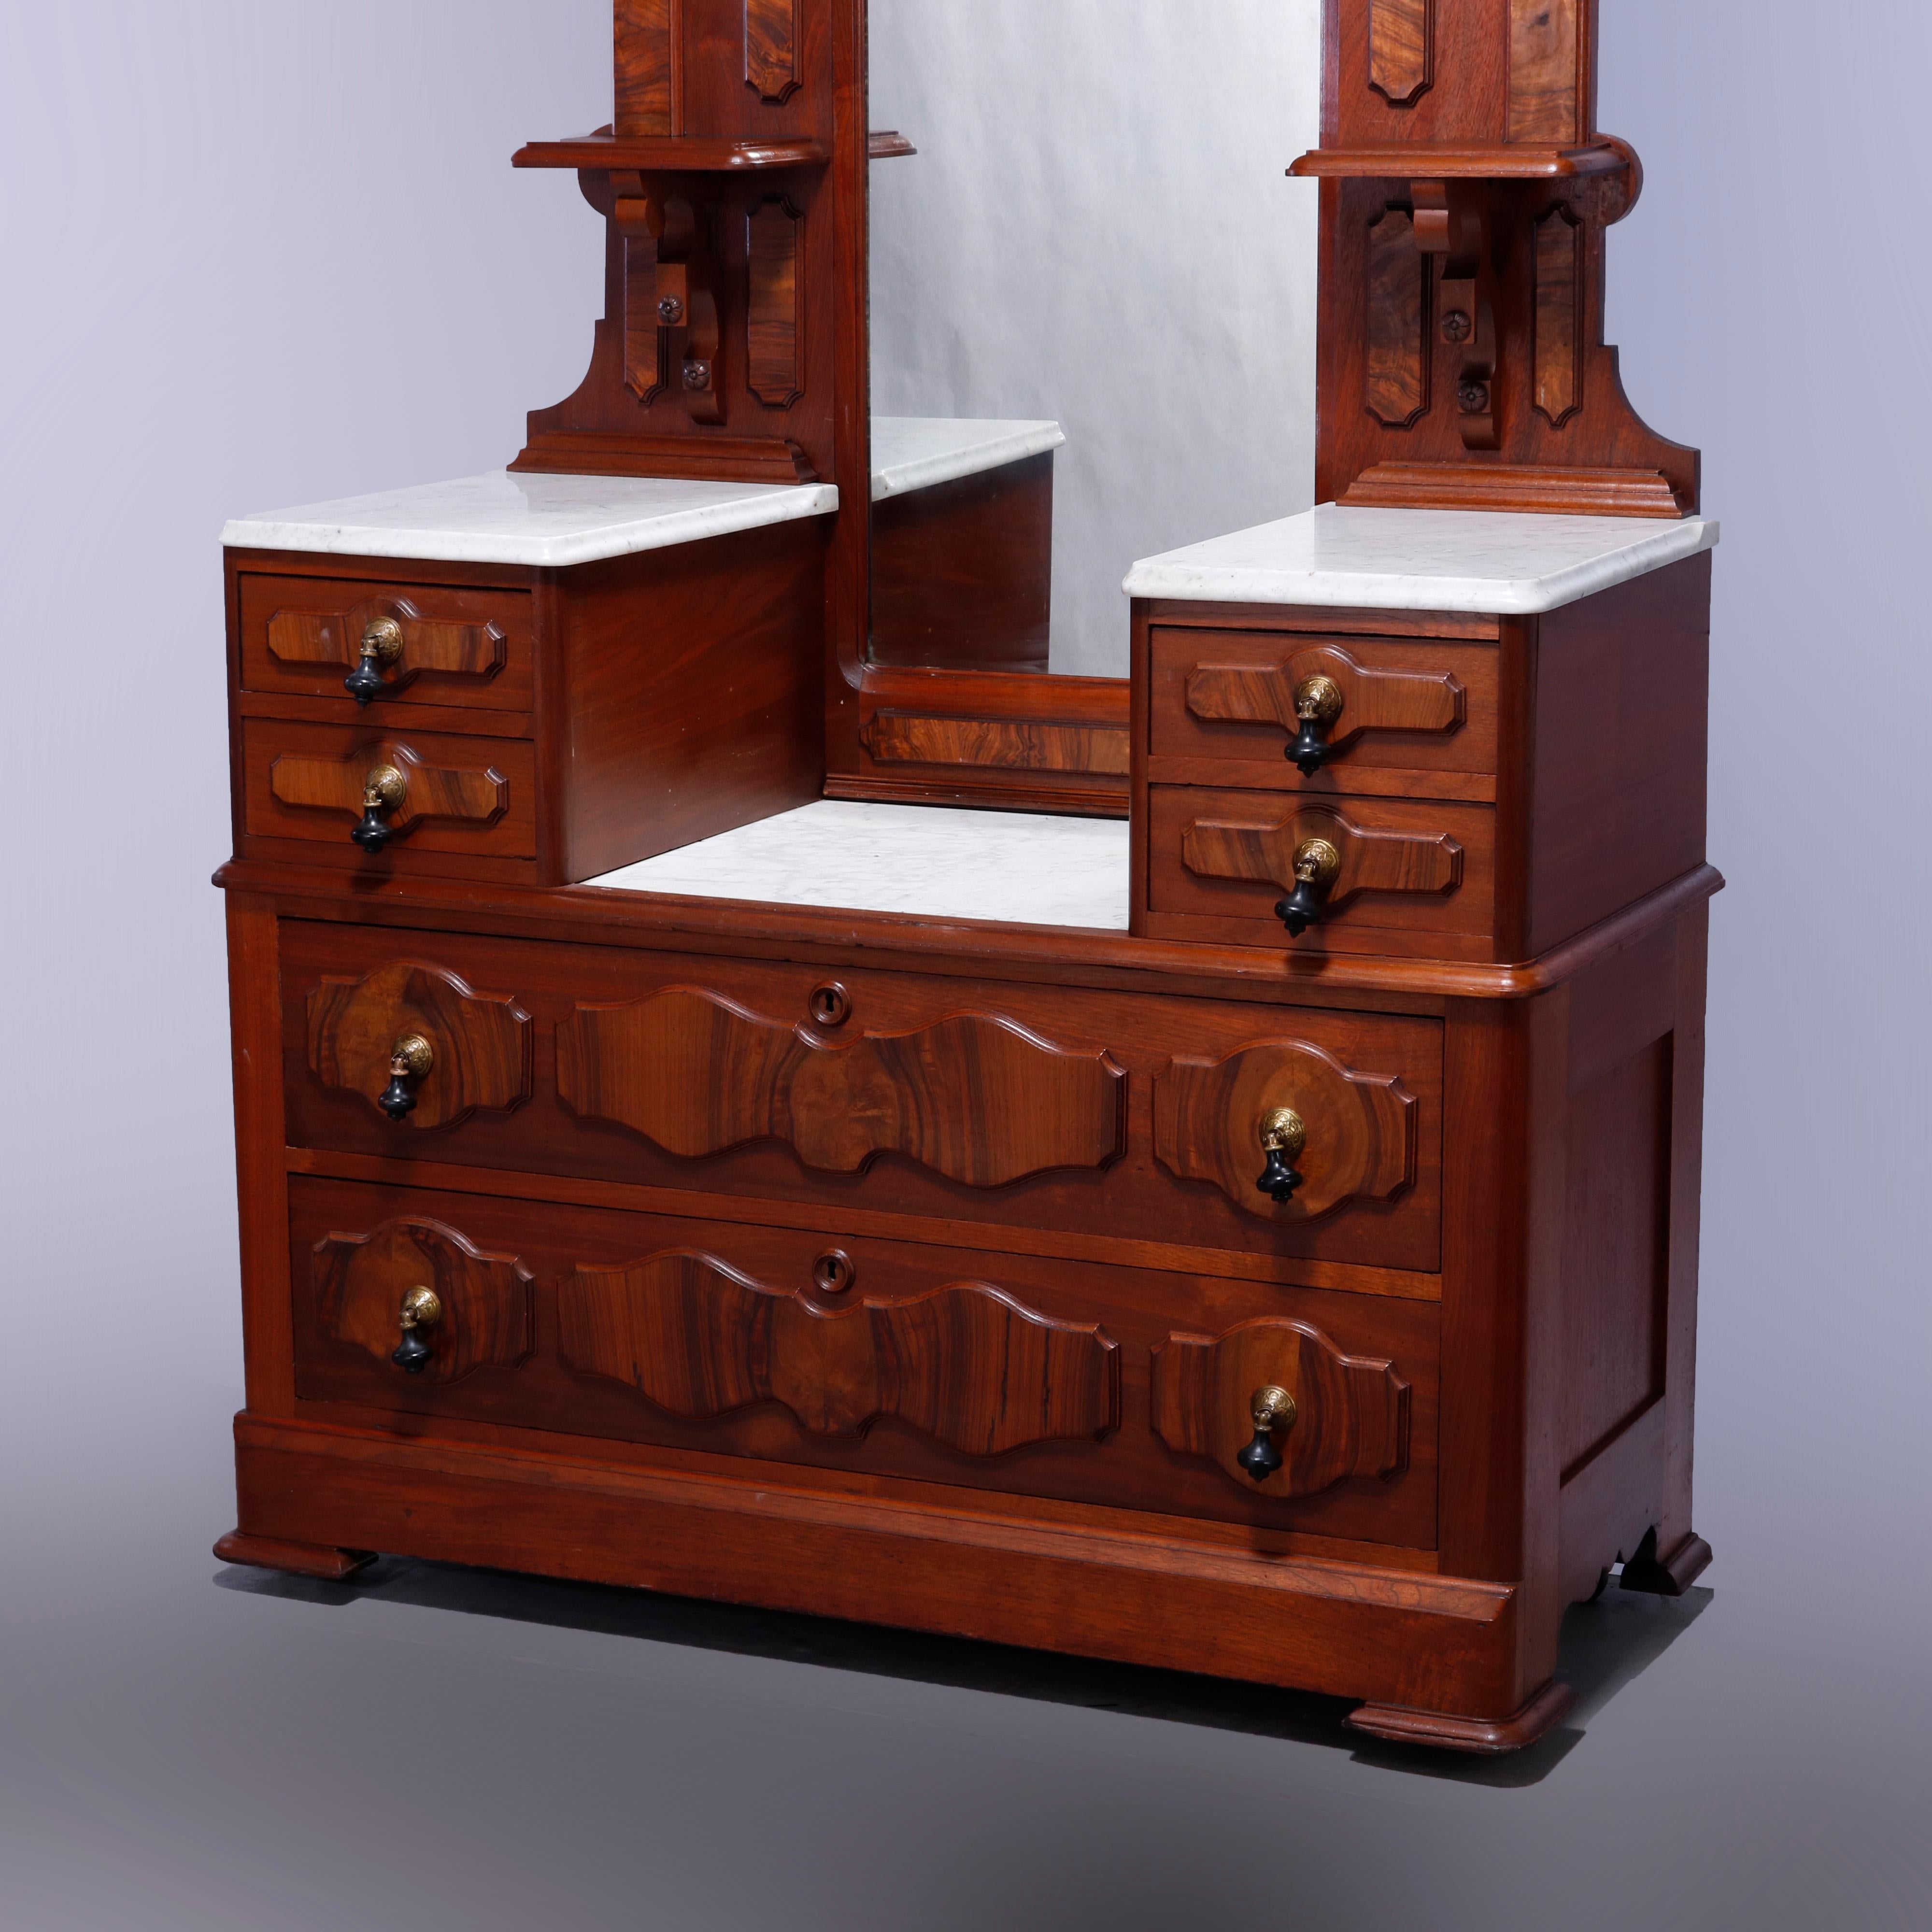 Carved Antique Renaissance Revival Walnut & Burl Marble Top Drop Center Dresser, c1880